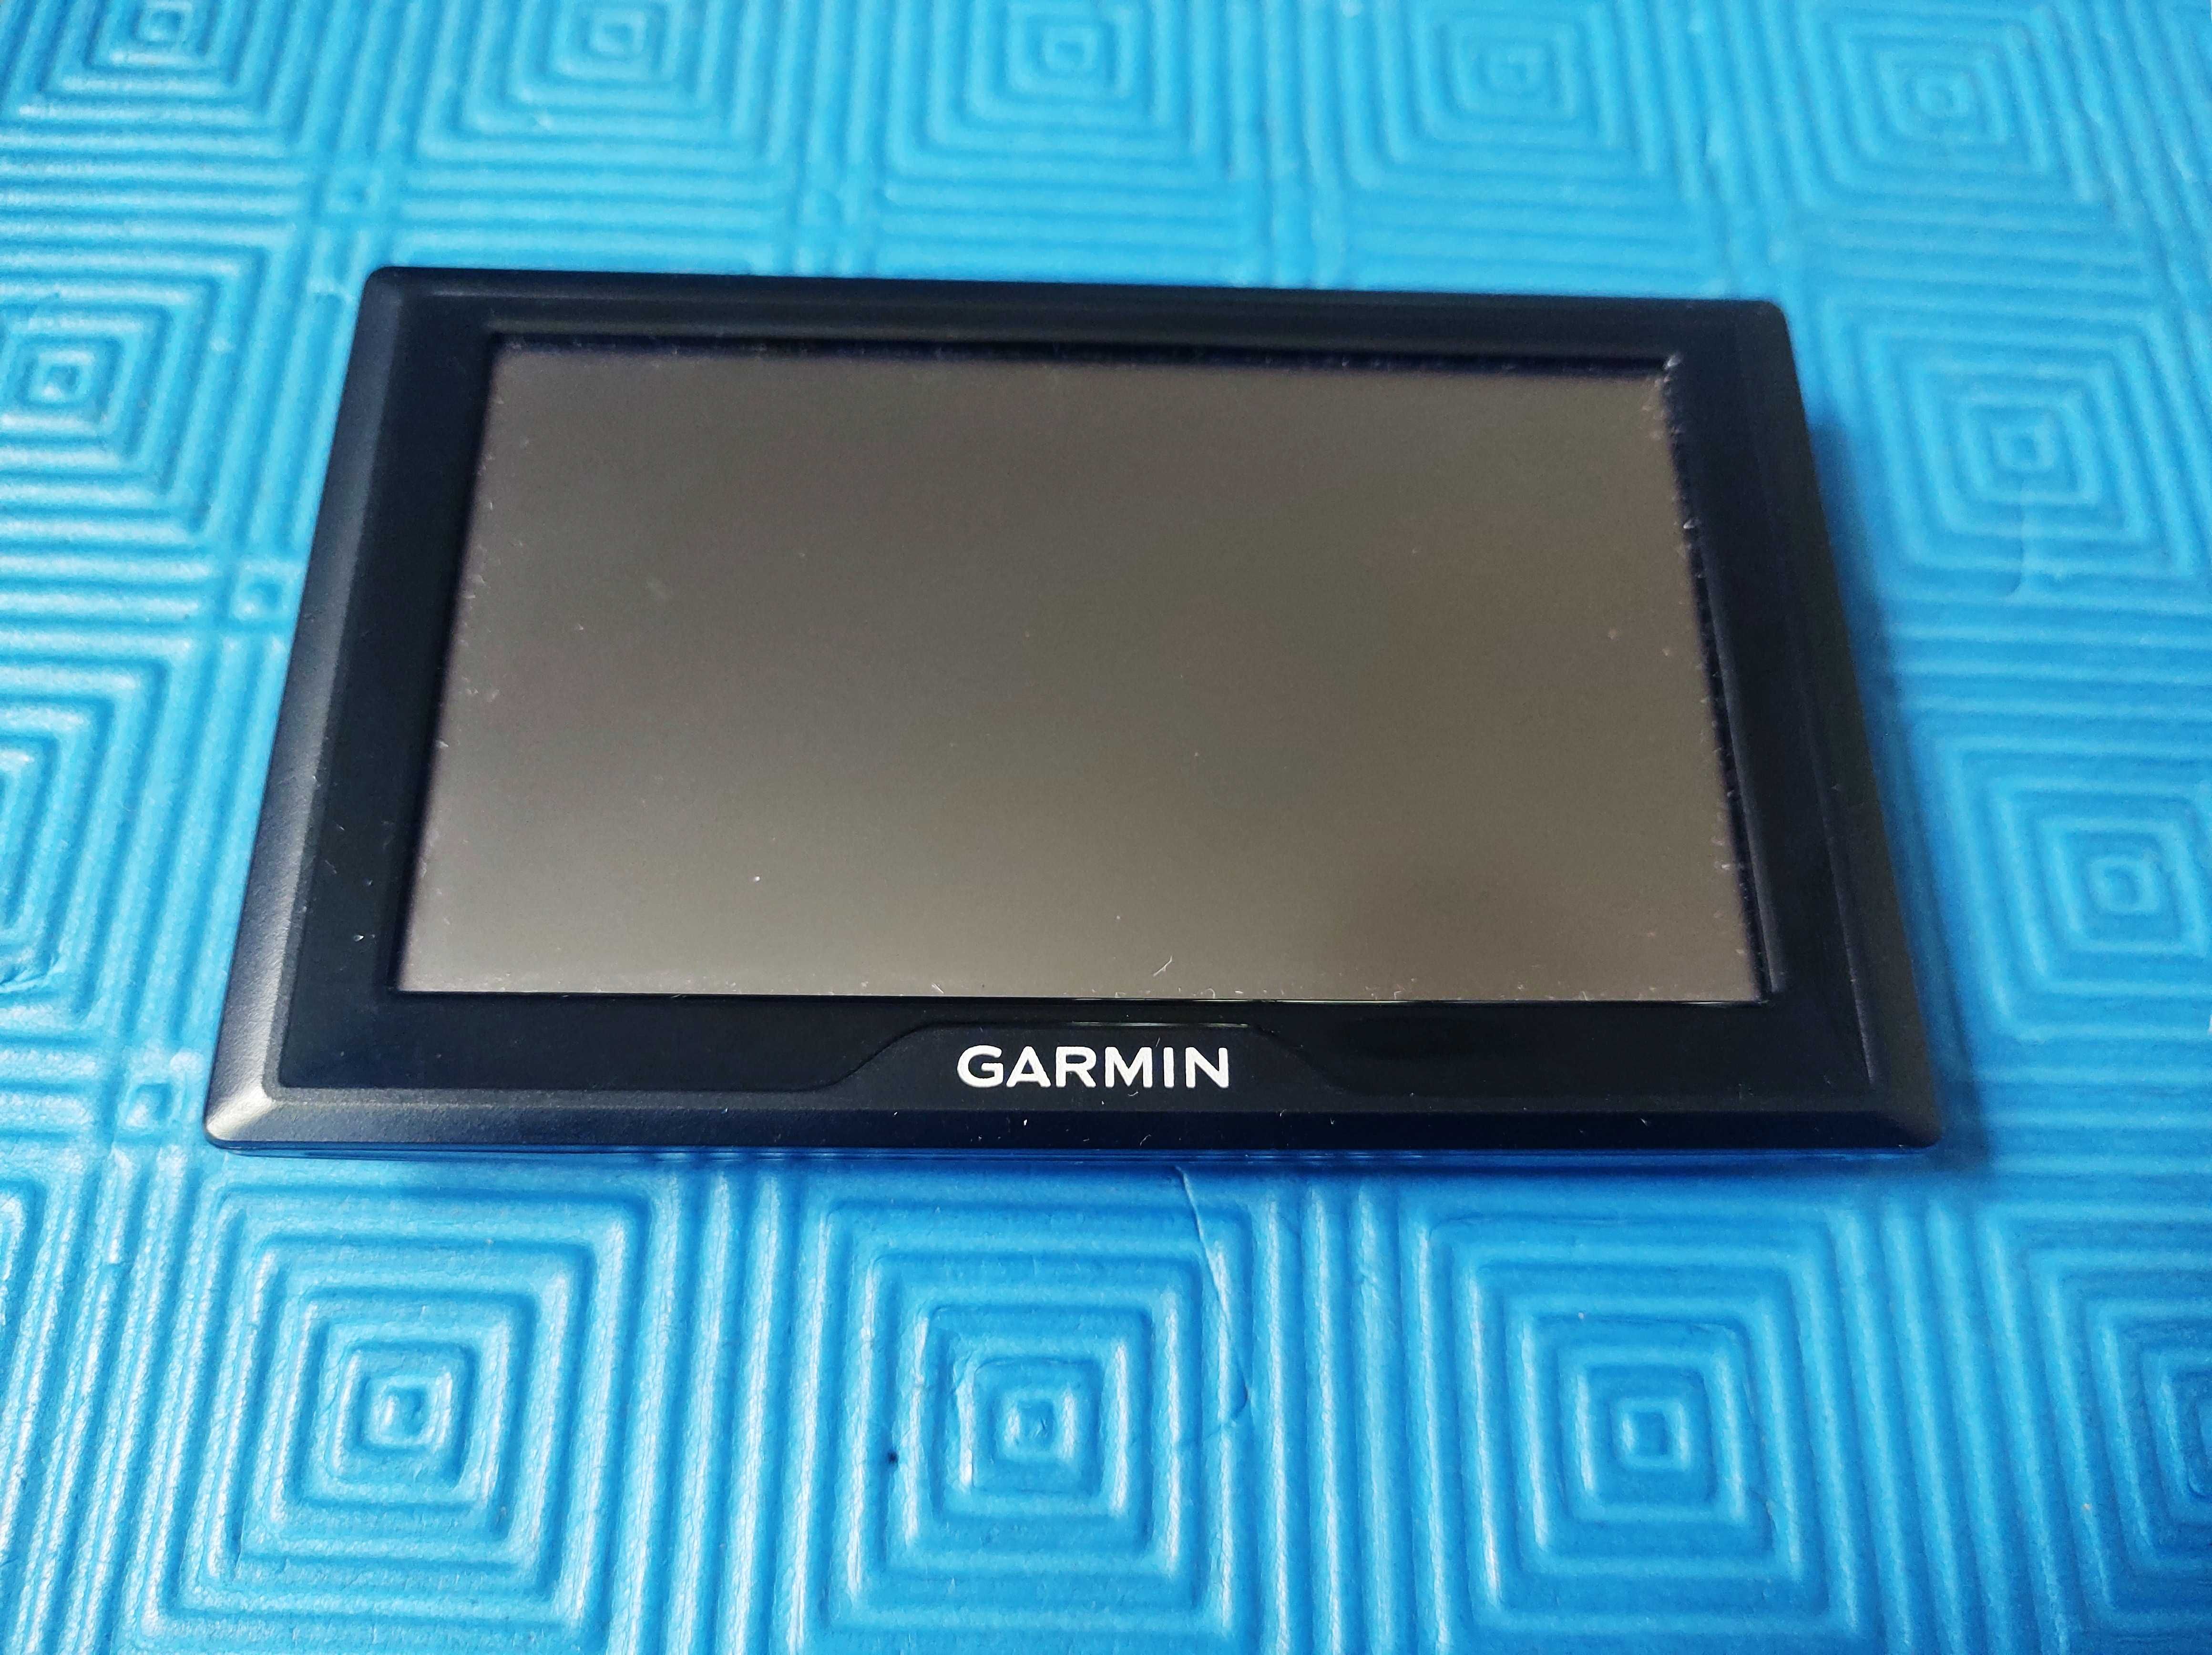 Маркова навигация Garmin Drive 5 Pro карти на цяла Европа 5 инча екран